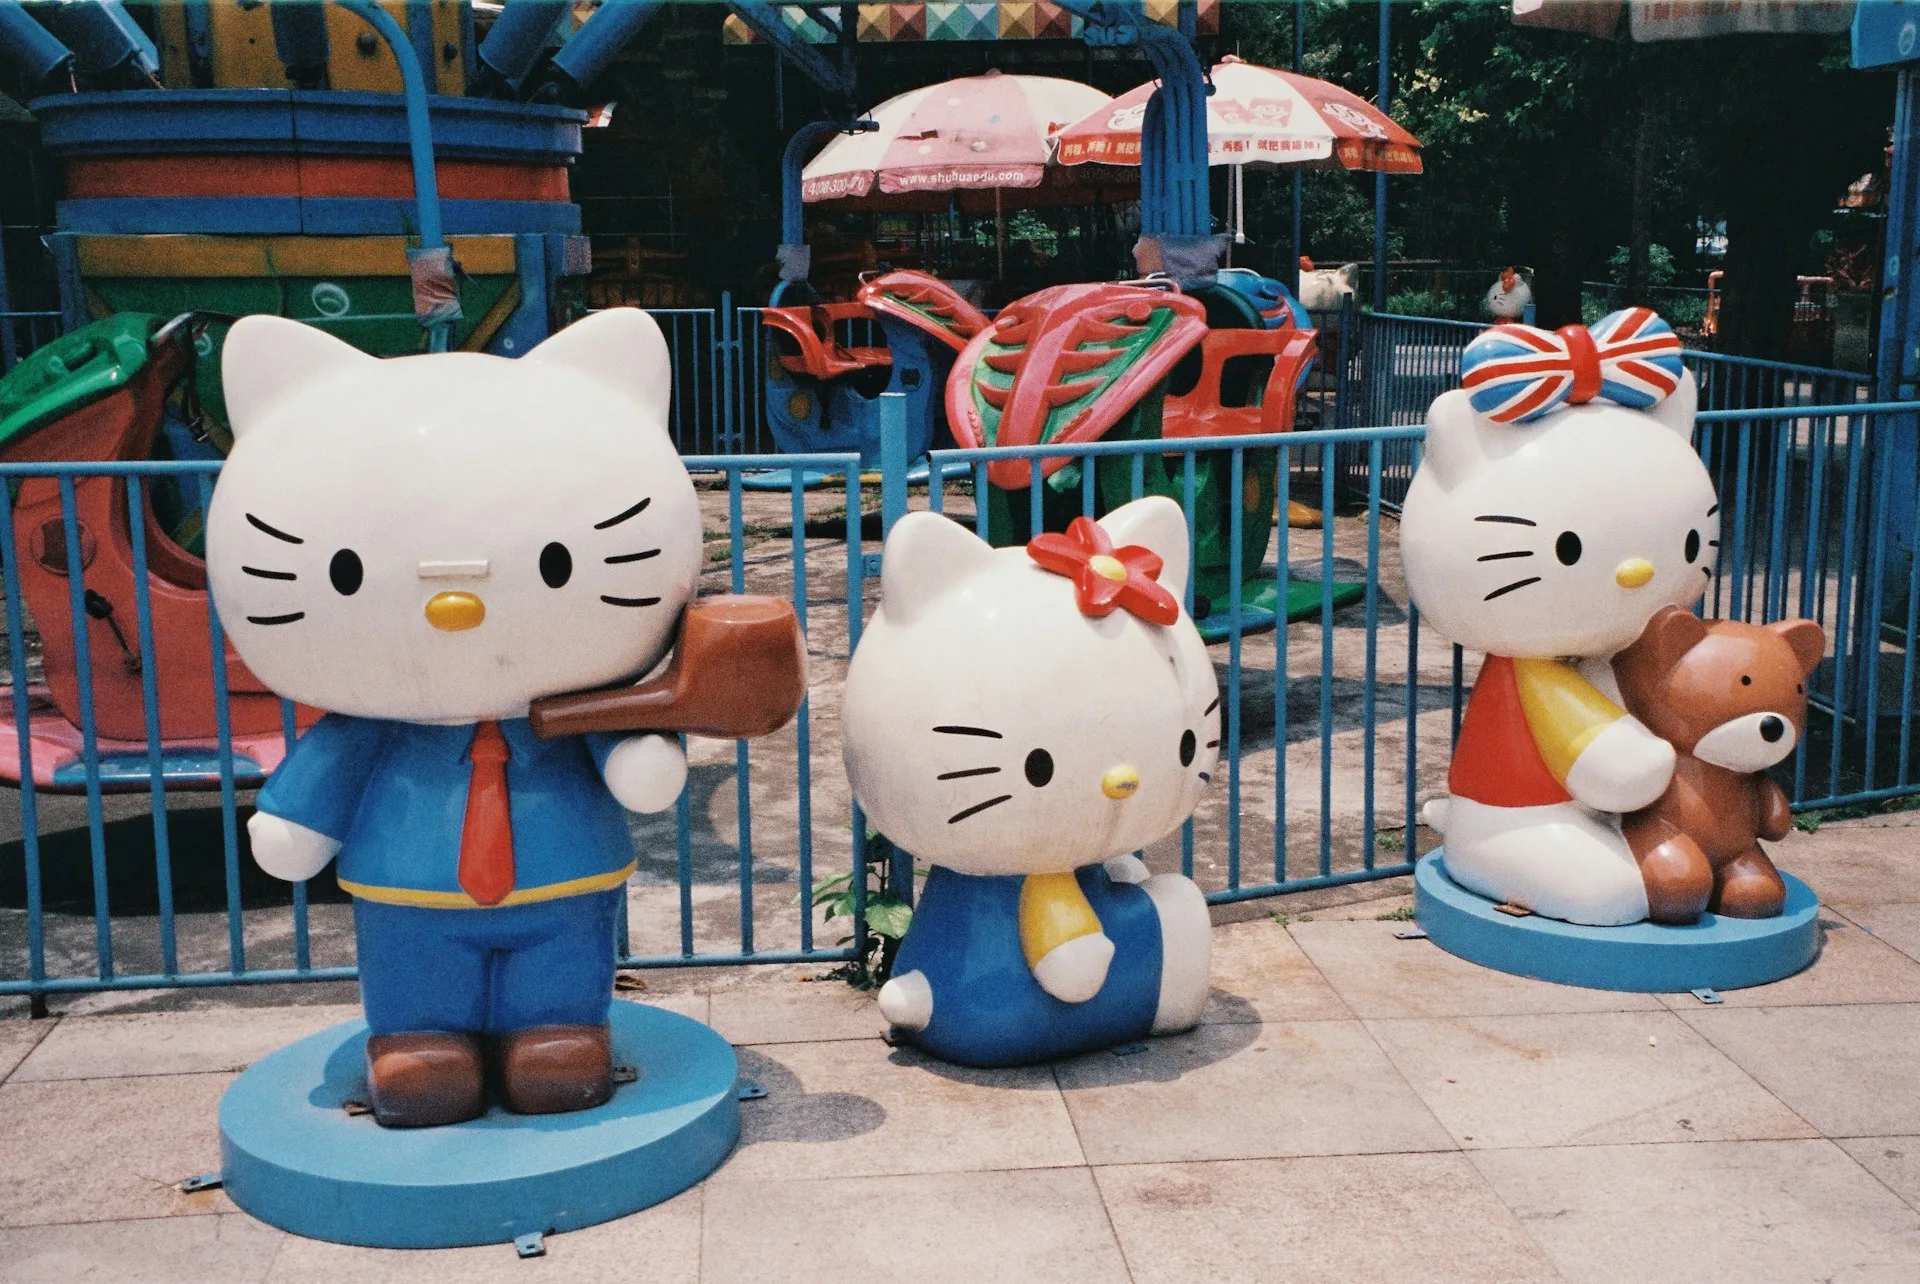 Hello Kitty figurines at fairground